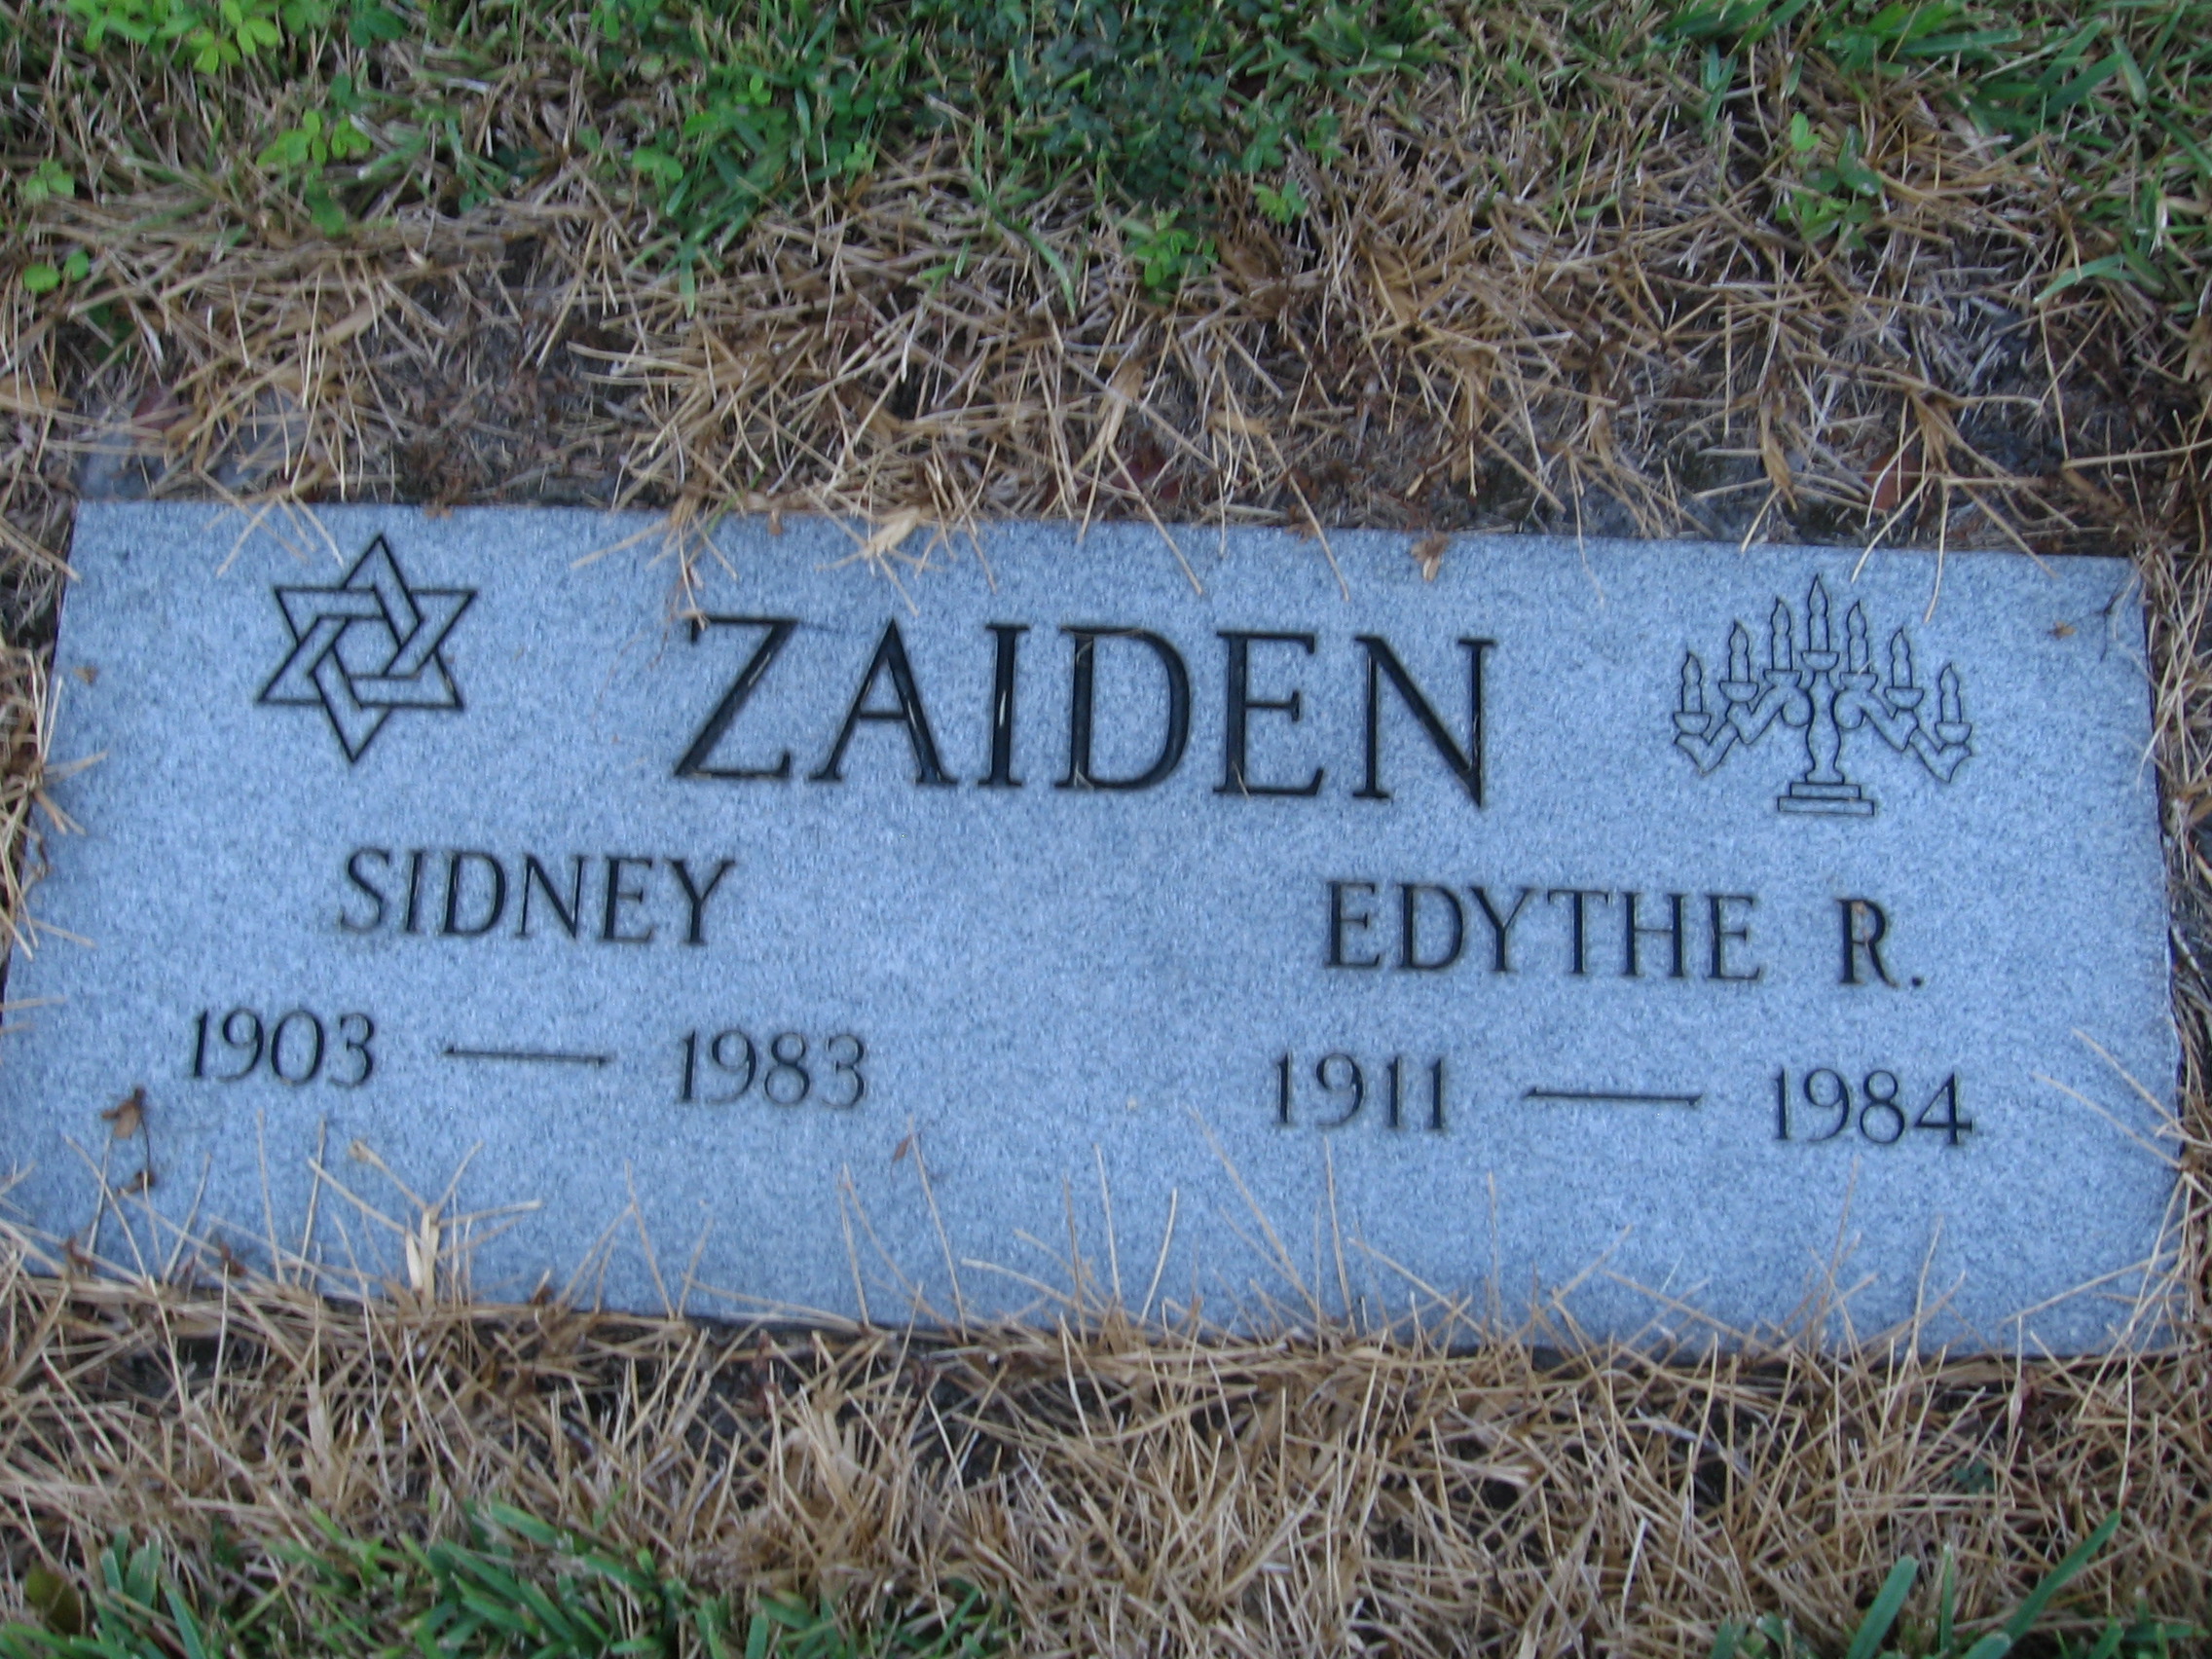 Sidney Zaiden